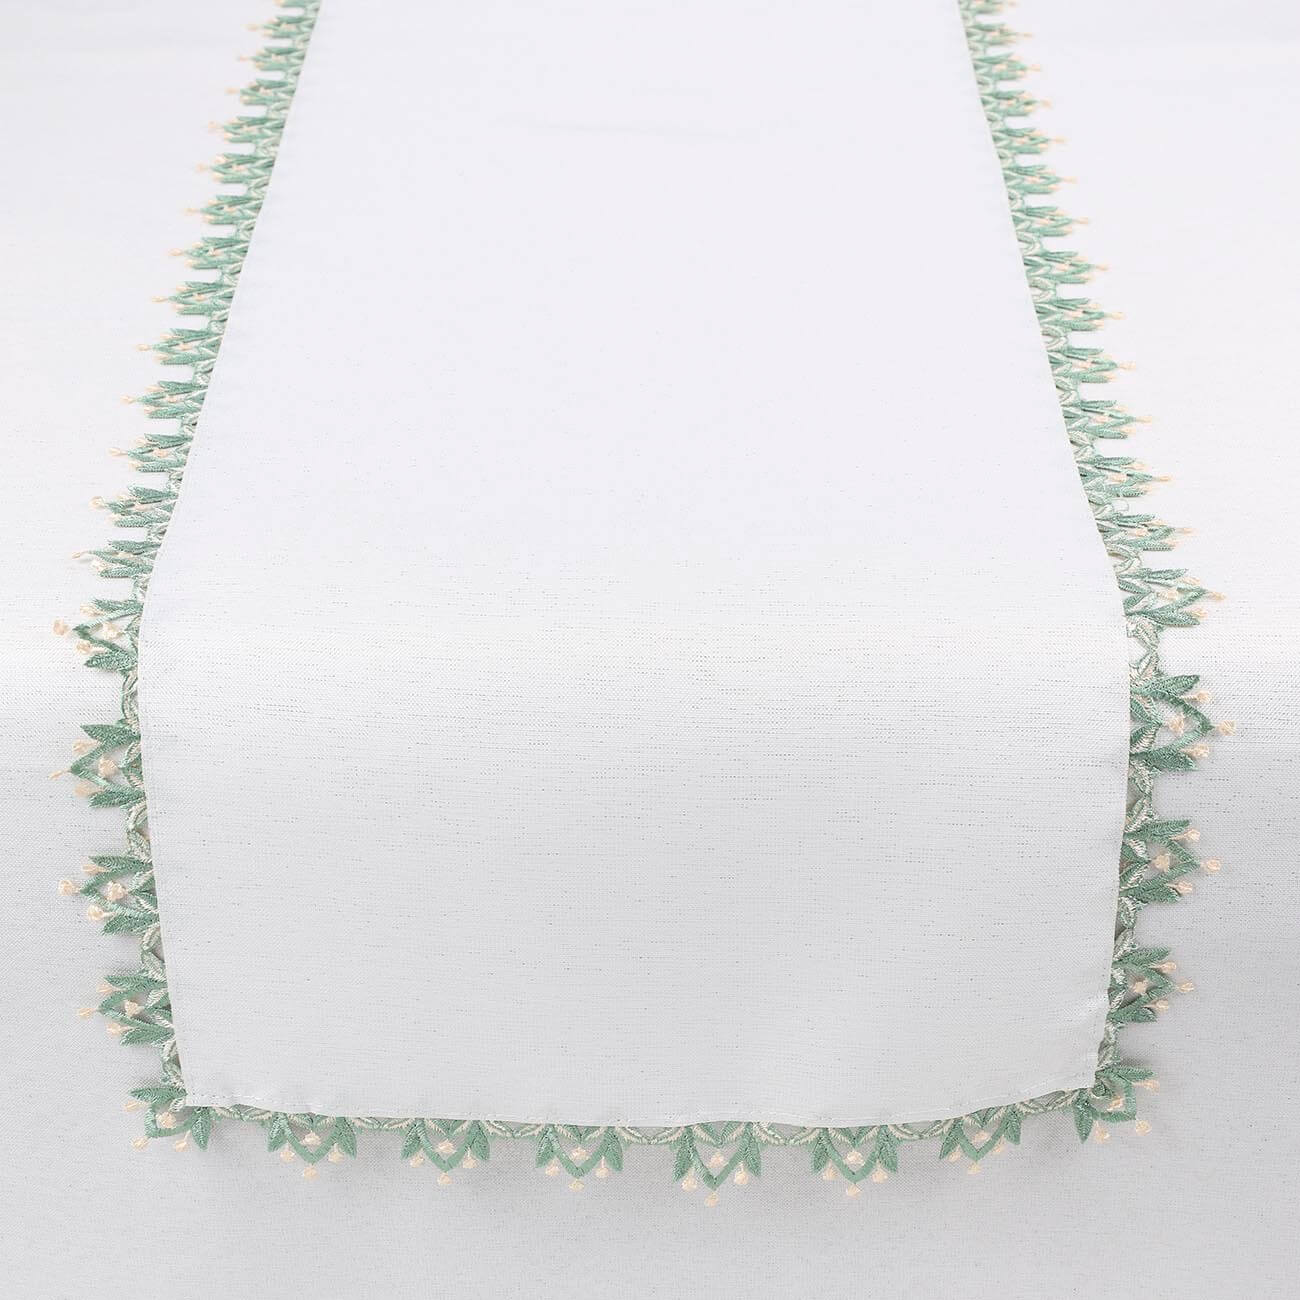 Дорожка настольная, 40х160 см, полиэстер, белая, Зеленое кружево, May-lily дорожка настольная 40х160 см жаккард полиэстер спандекс экрю магнолия magnolia